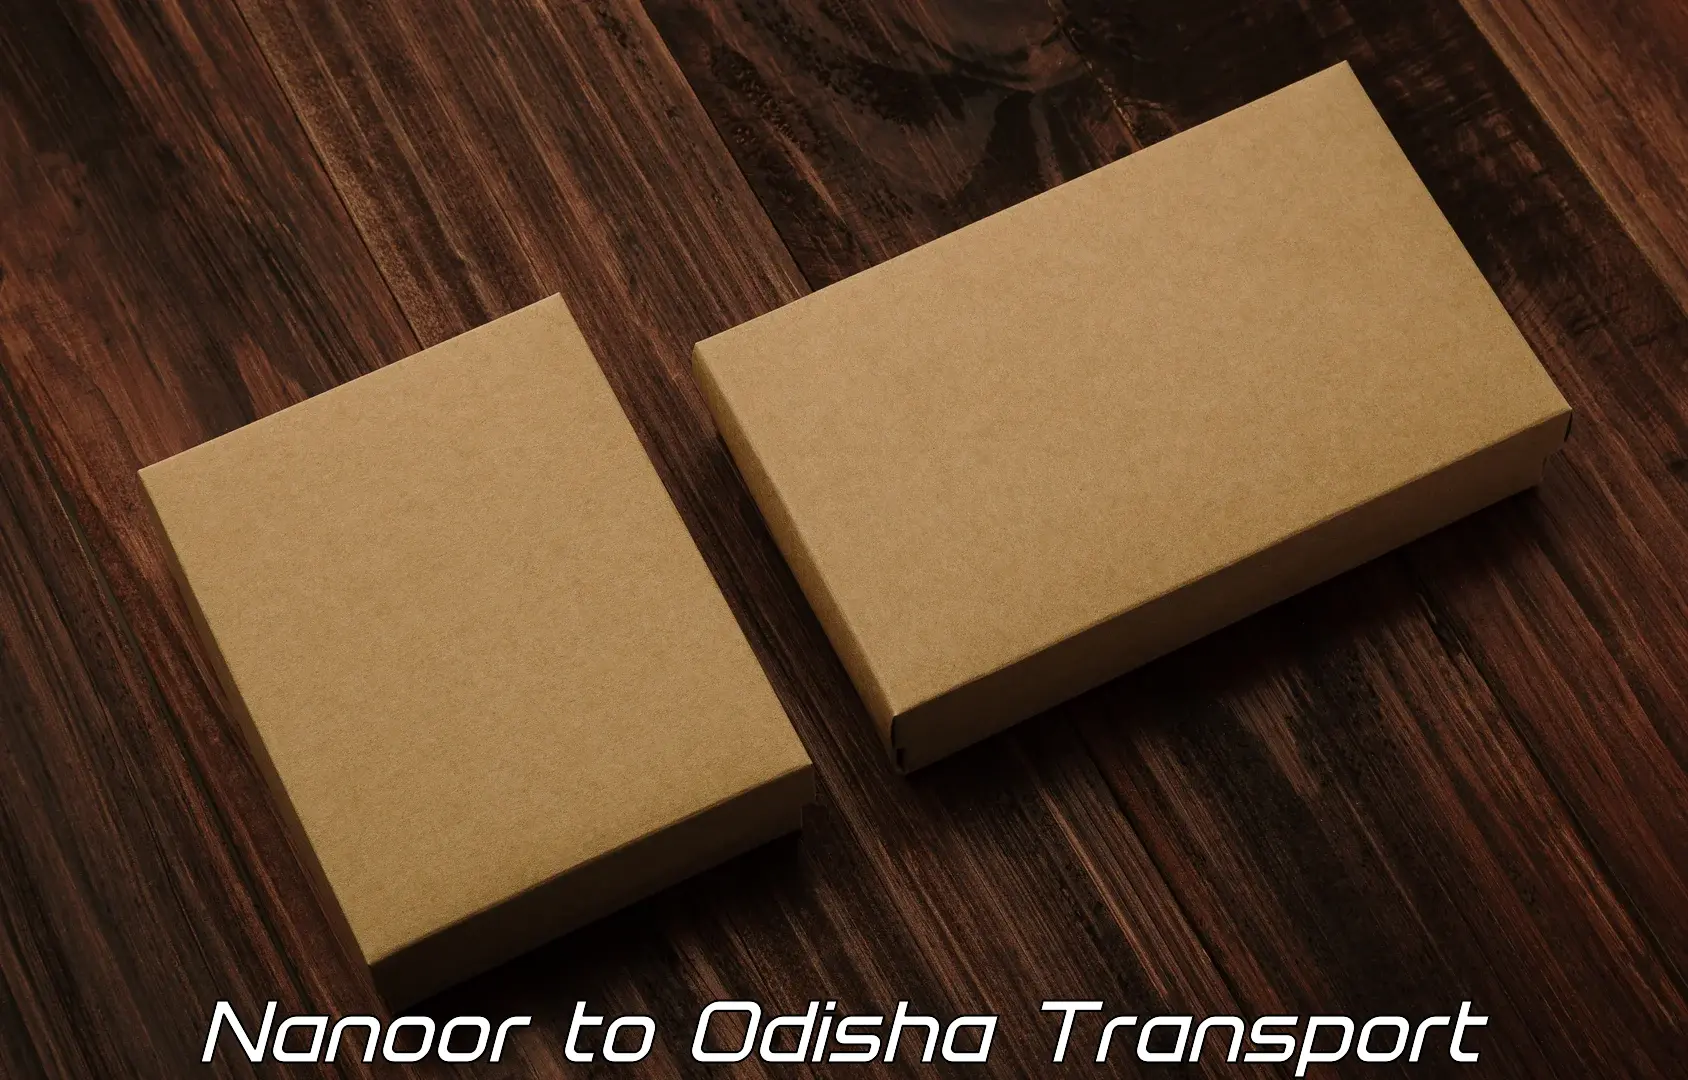 Vehicle parcel service Nanoor to Odisha